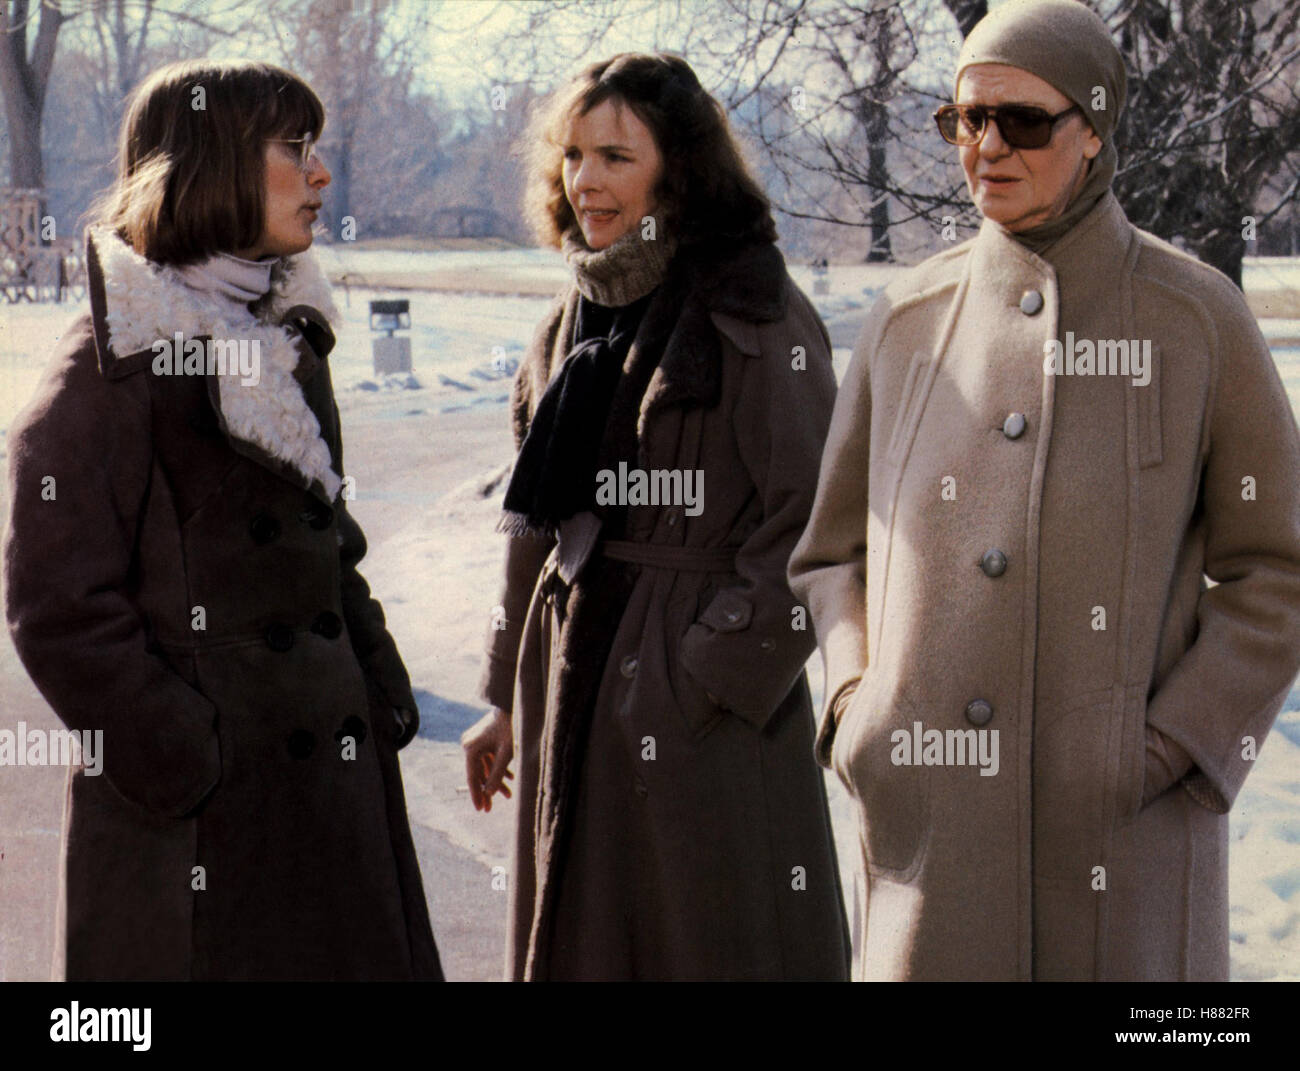 Innenleben (interiores), USA 1978, Regie: Woody Allen, Mary Beth HURT, Diane Keaton, Geraldine PAGE, Stichwort: Mutter, Töchter Foto de stock